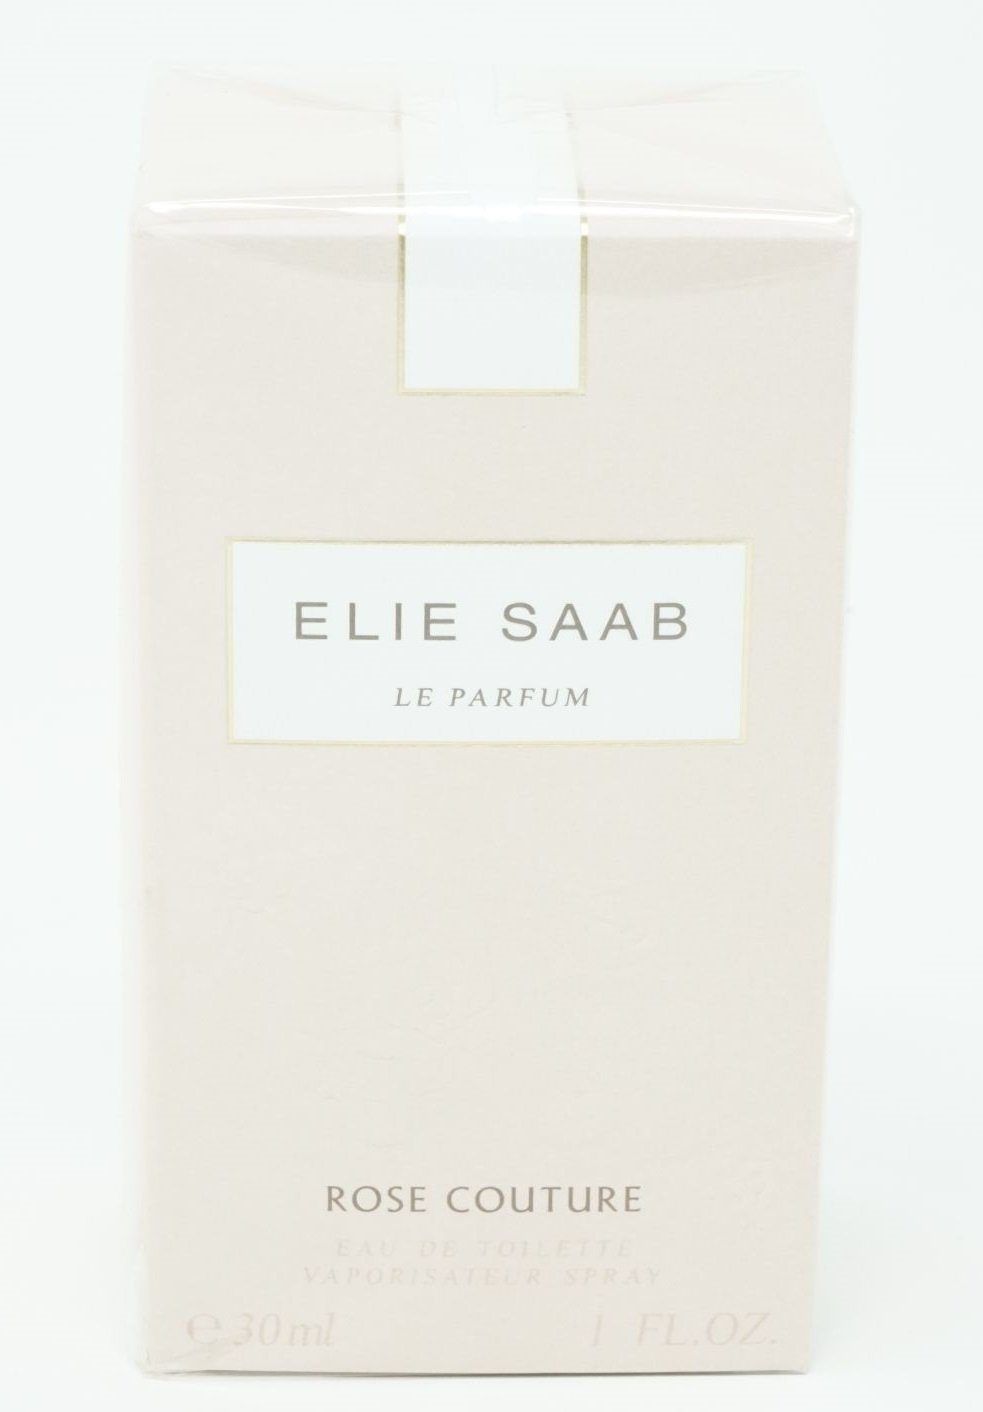 ELIE SAAB Spray Toilette Elie Saab Eau Couture 30ml de Eau Toilette de Rose